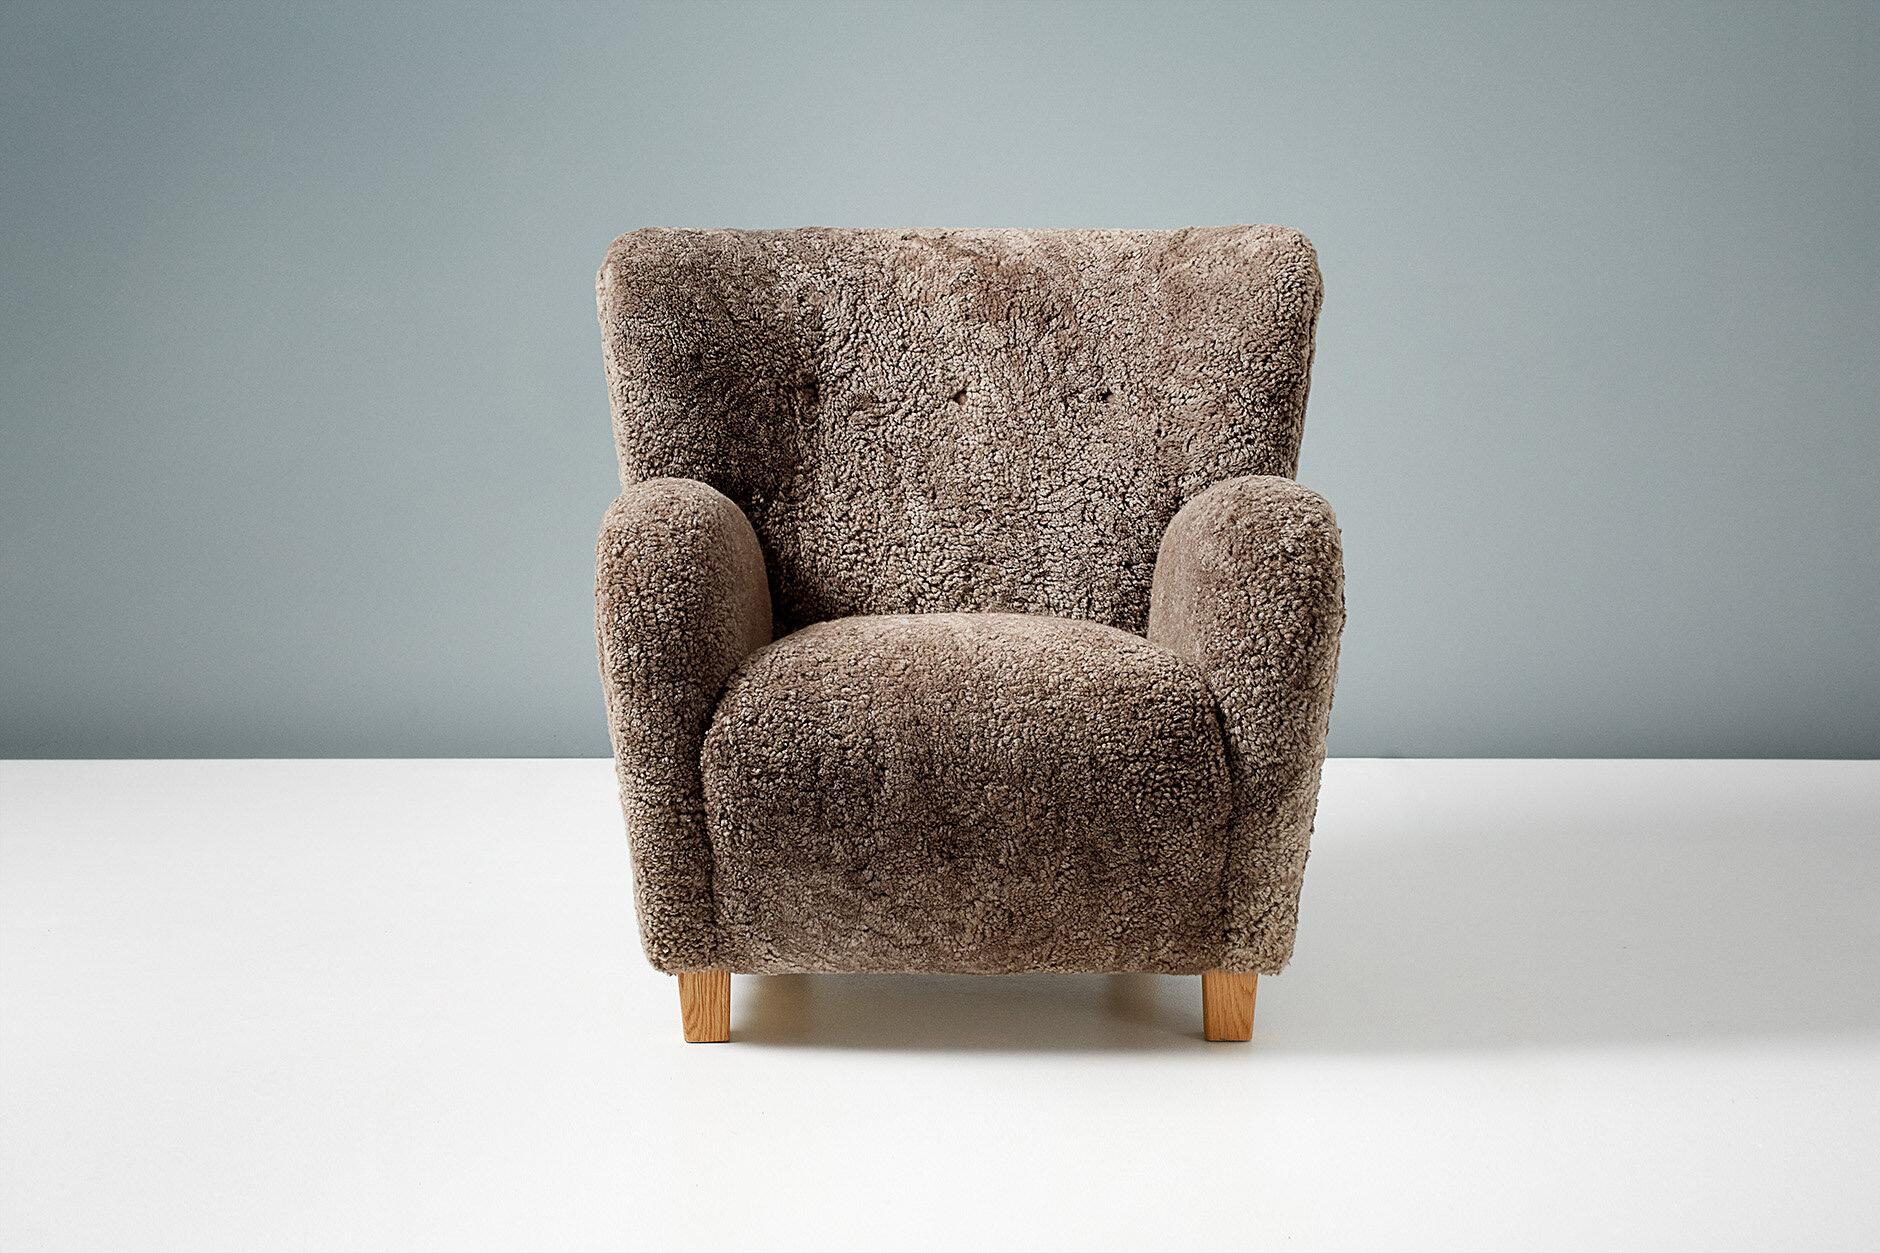 Dagmar Design - Chaise longue Karu

Ces chaises longues haut de gamme sont fabriquées à la main dans nos ateliers au Royaume-Uni. Les pieds de la chaise sont disponibles en chêne ou en hêtre dans une gamme de finitions. Les cadres sont fabriqués